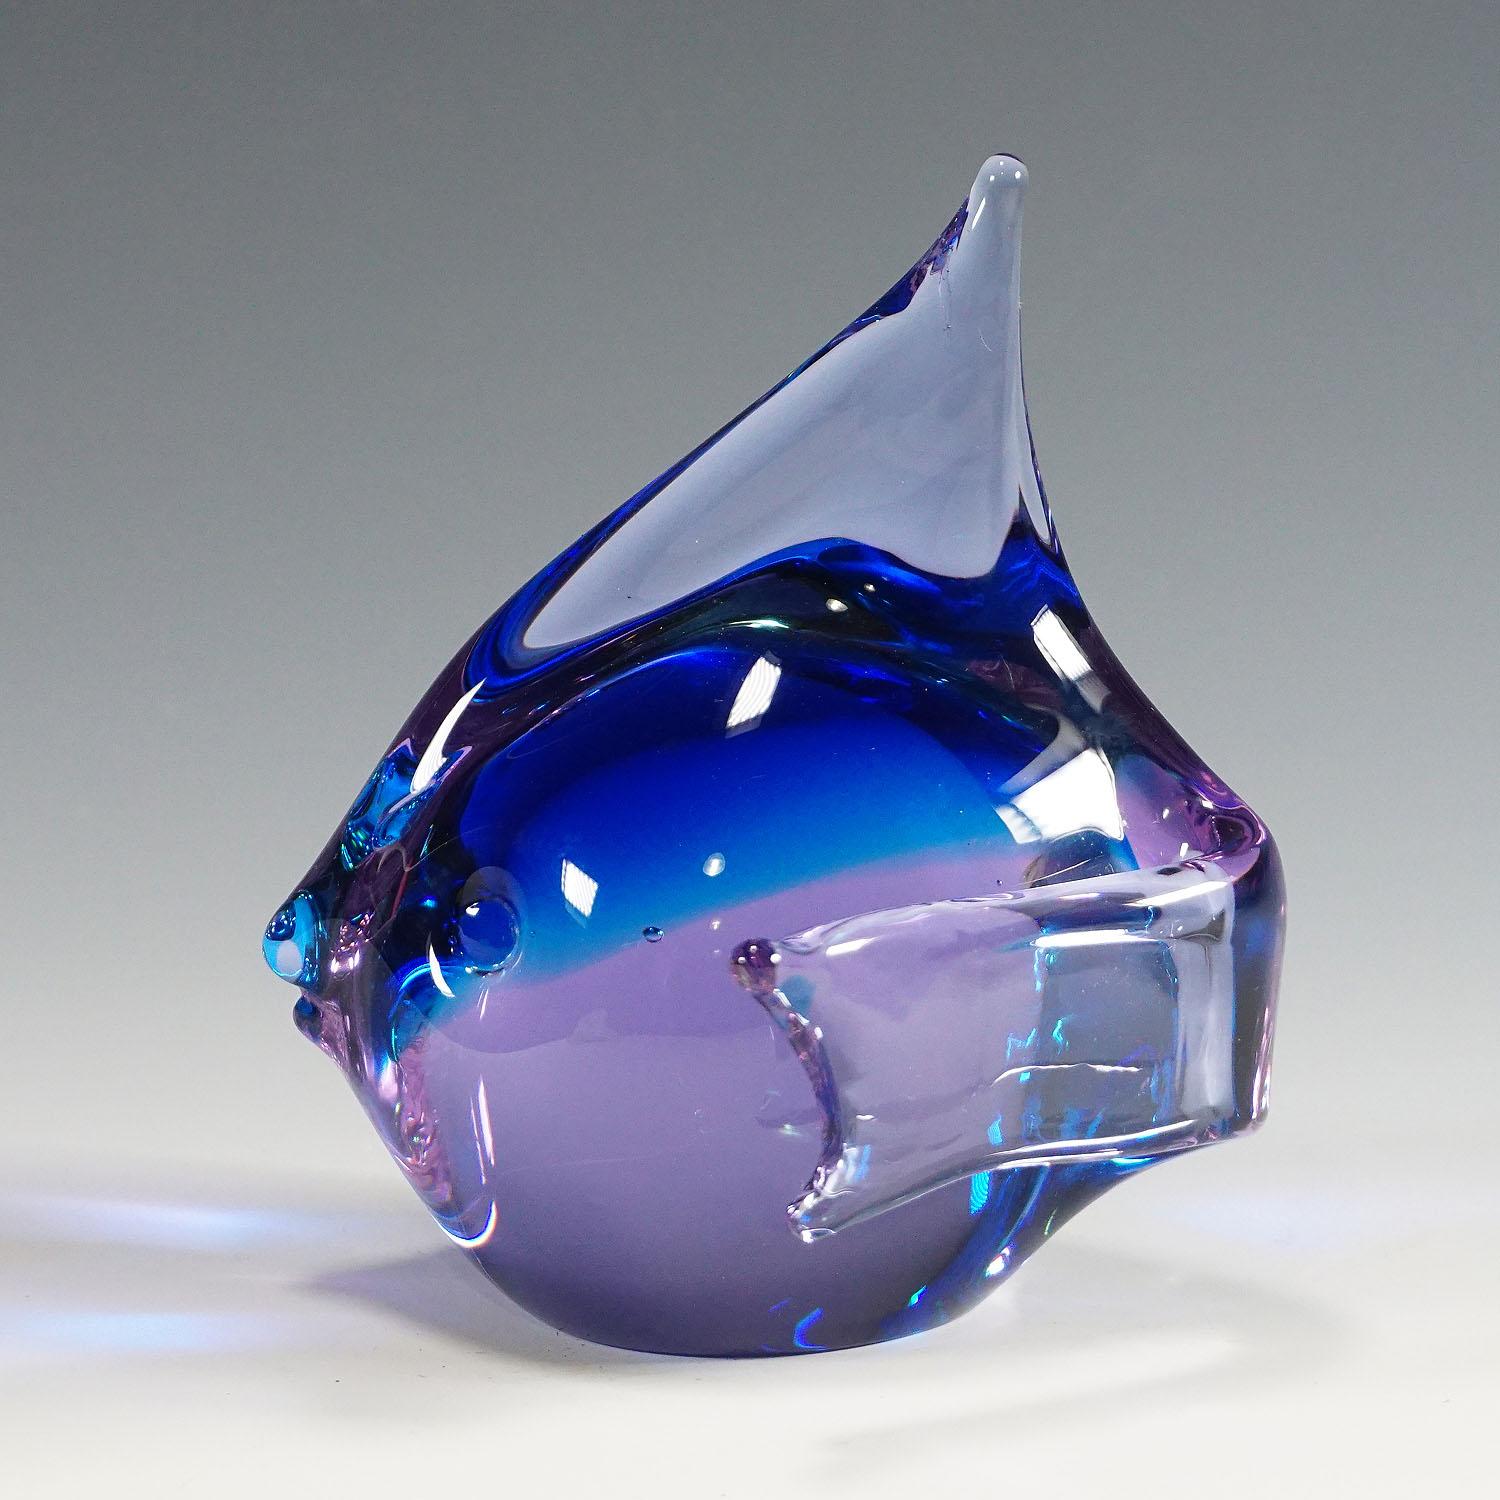 Sculpture d'un poisson stylisé en verre bleu et rose. Fabriqué à la main dans la manufacture de verre gral, en Allemagne. Conçu par Livio Seguso, vers 1970. Signature incisée de l'artiste (LS) sur la base.

Livio Seguso (* 1930) est issu d'une